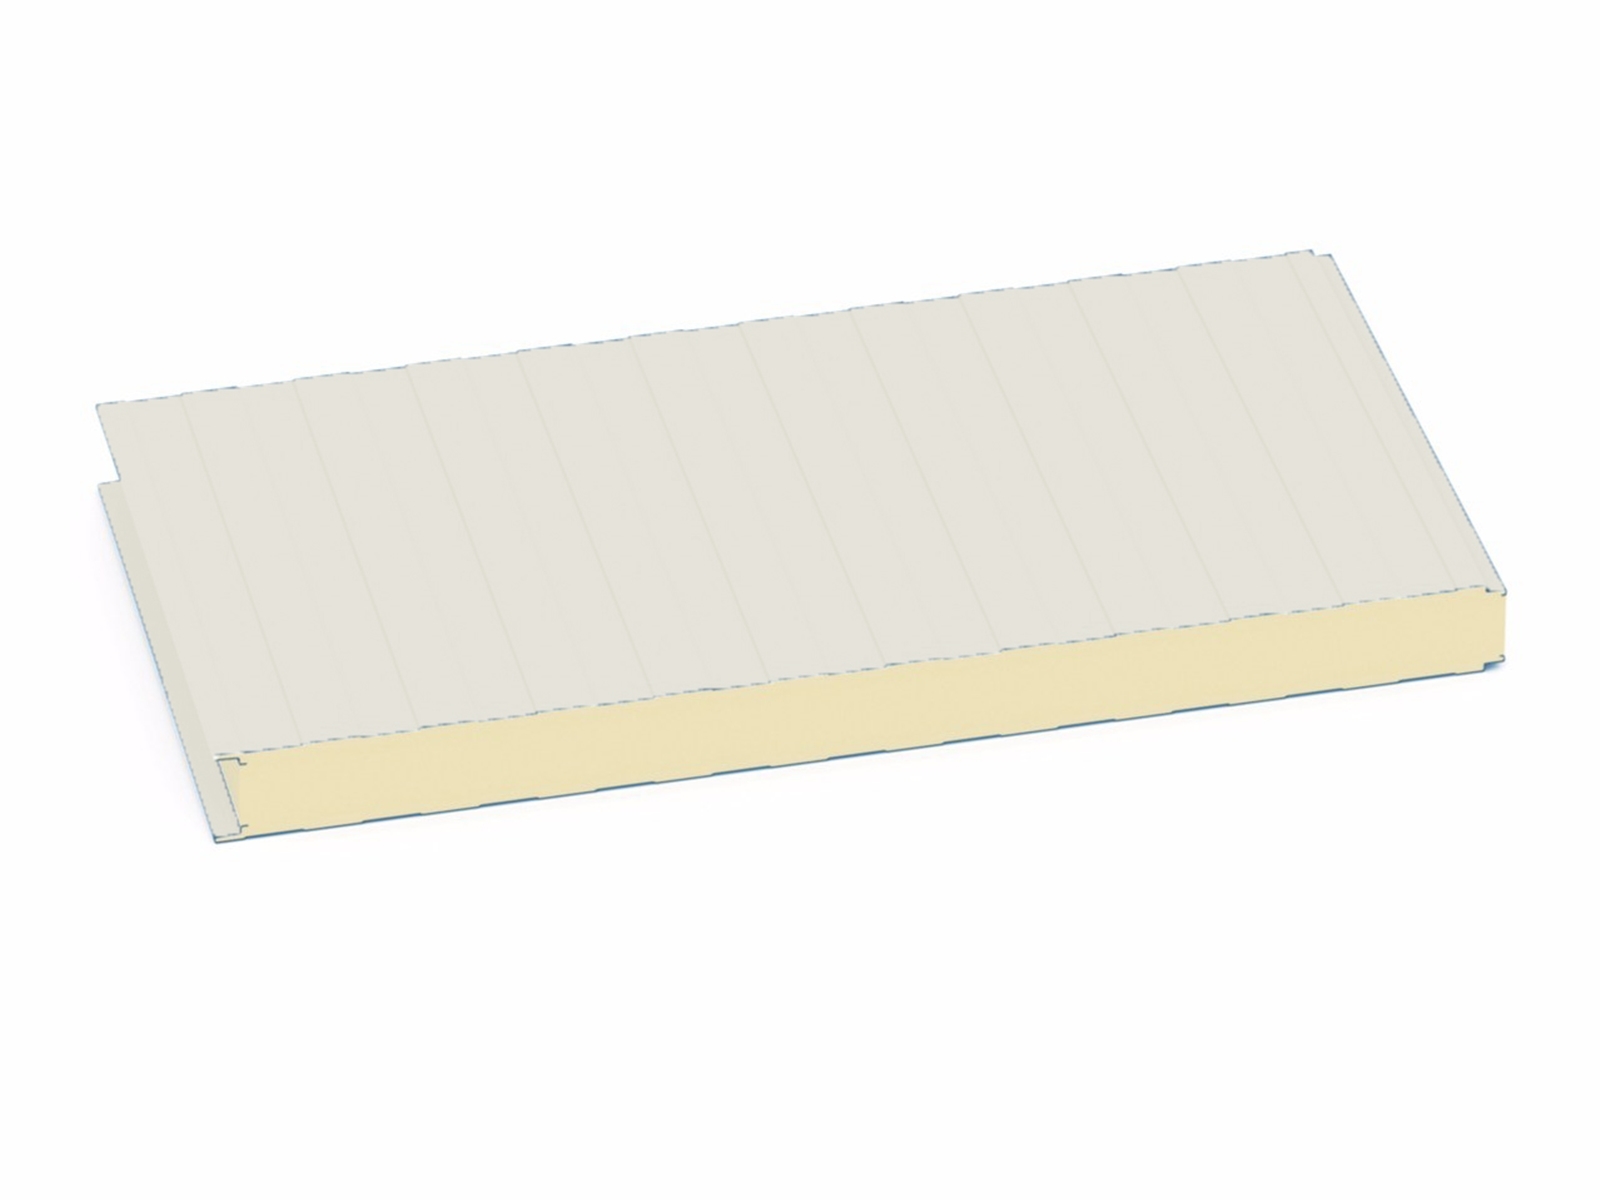 Isopan zichtbaar PUR sandwichpaneel wand, Eurobox, 40mm, 2-zijdig SP25 Grijswit (±RAL 9002) 